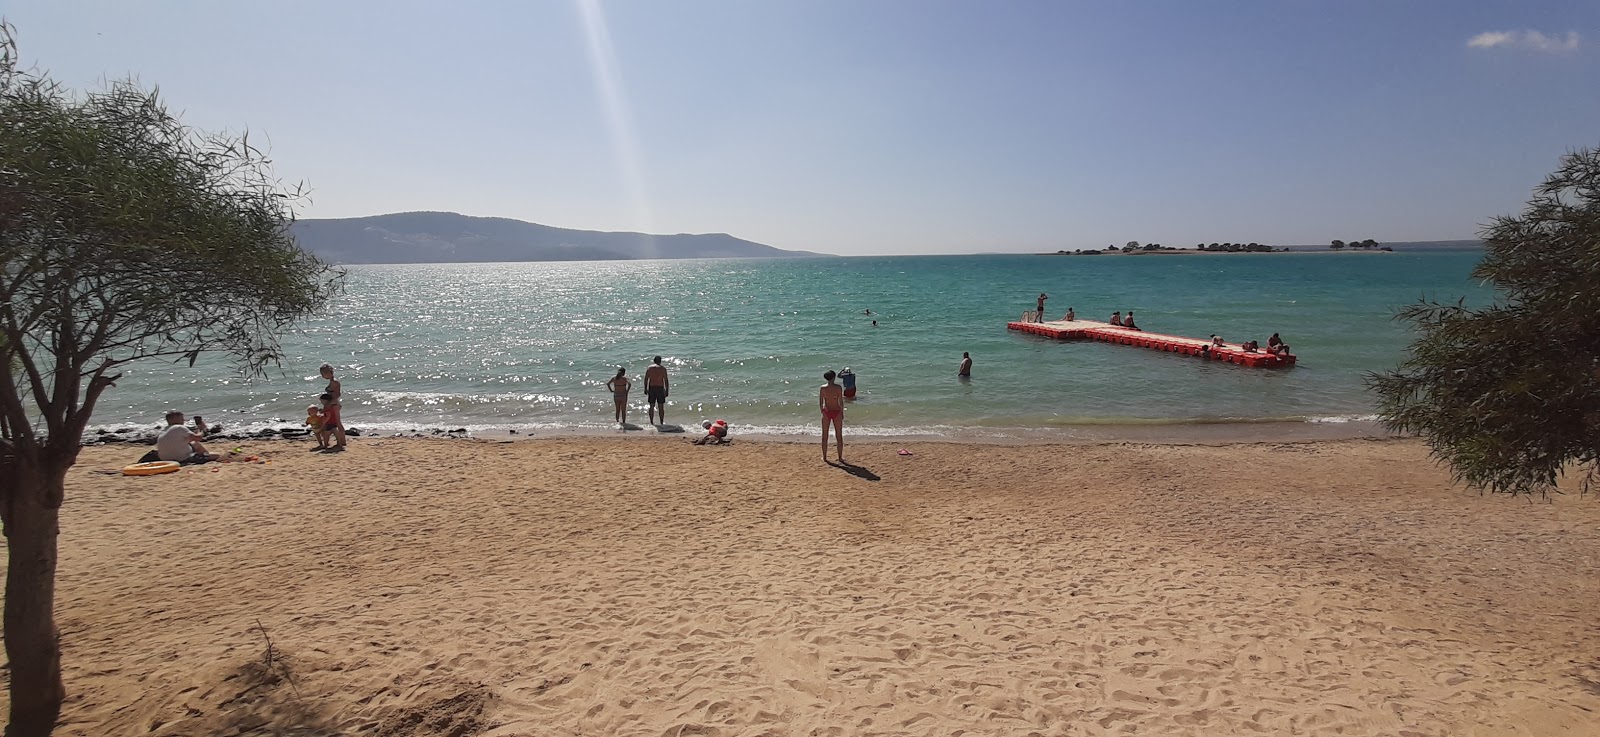 Kerem beach II的照片 带有碧绿色水表面